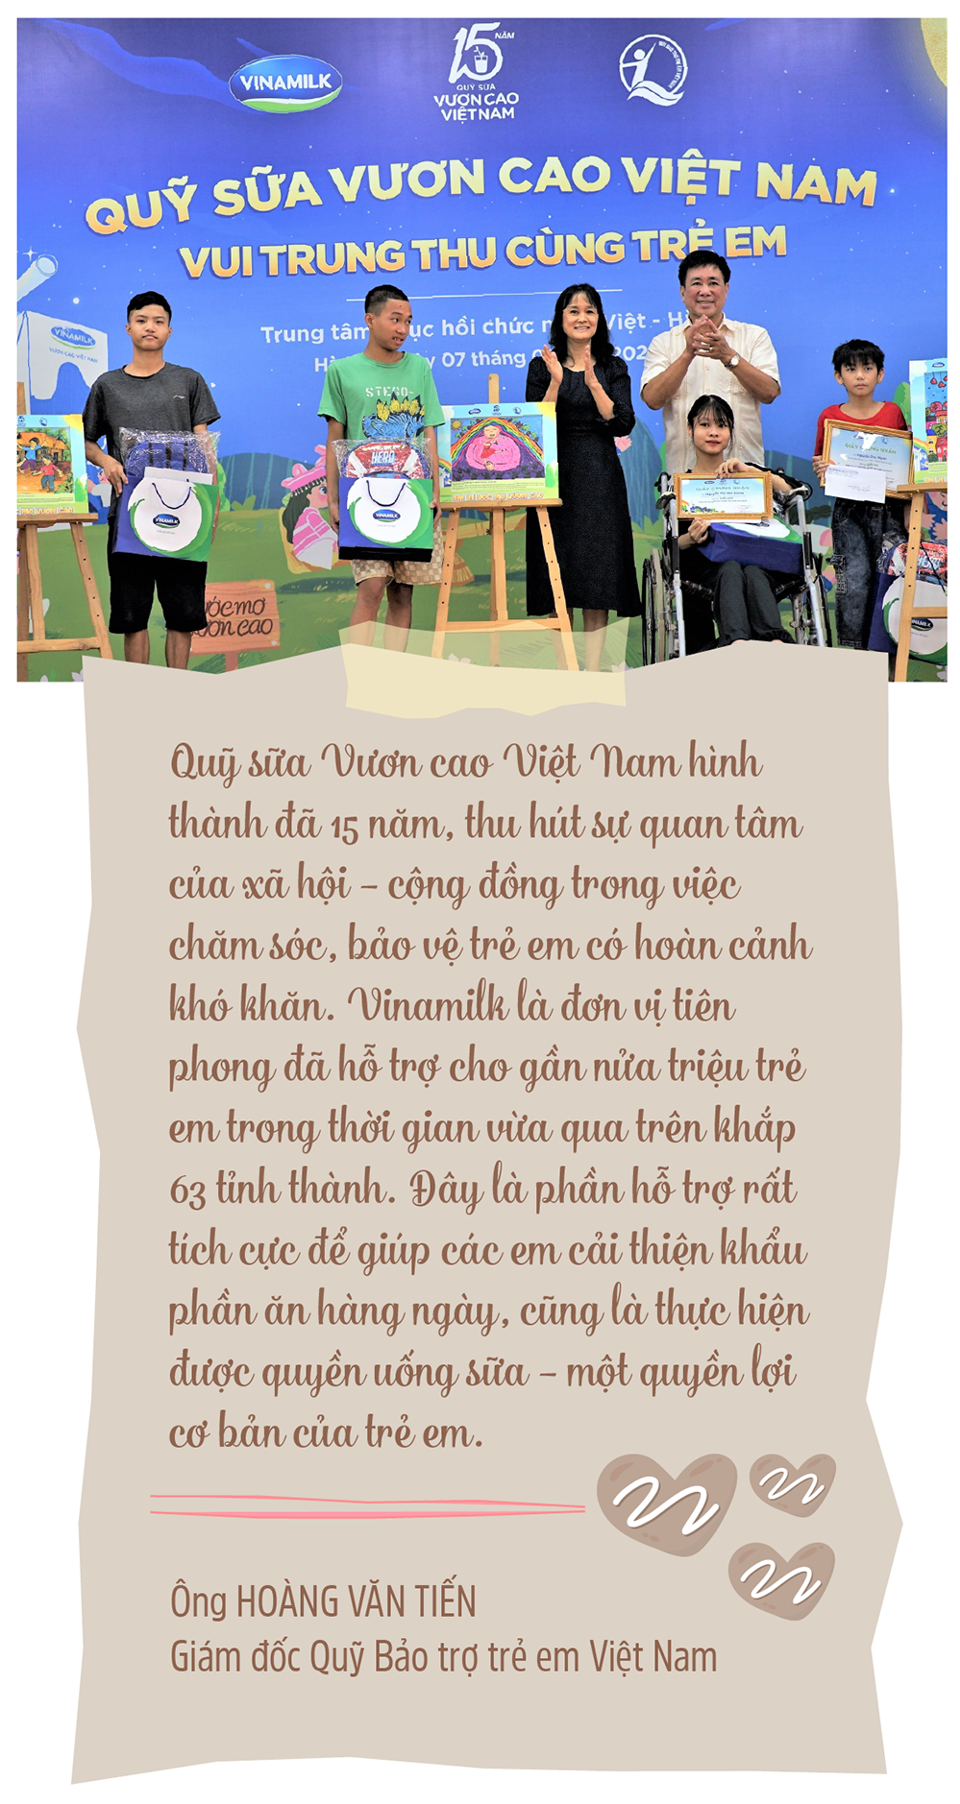 Ký ức ngọt ngào của hành trình 15 năm Quỹ sữa Vươn cao Việt Nam - Ảnh 11